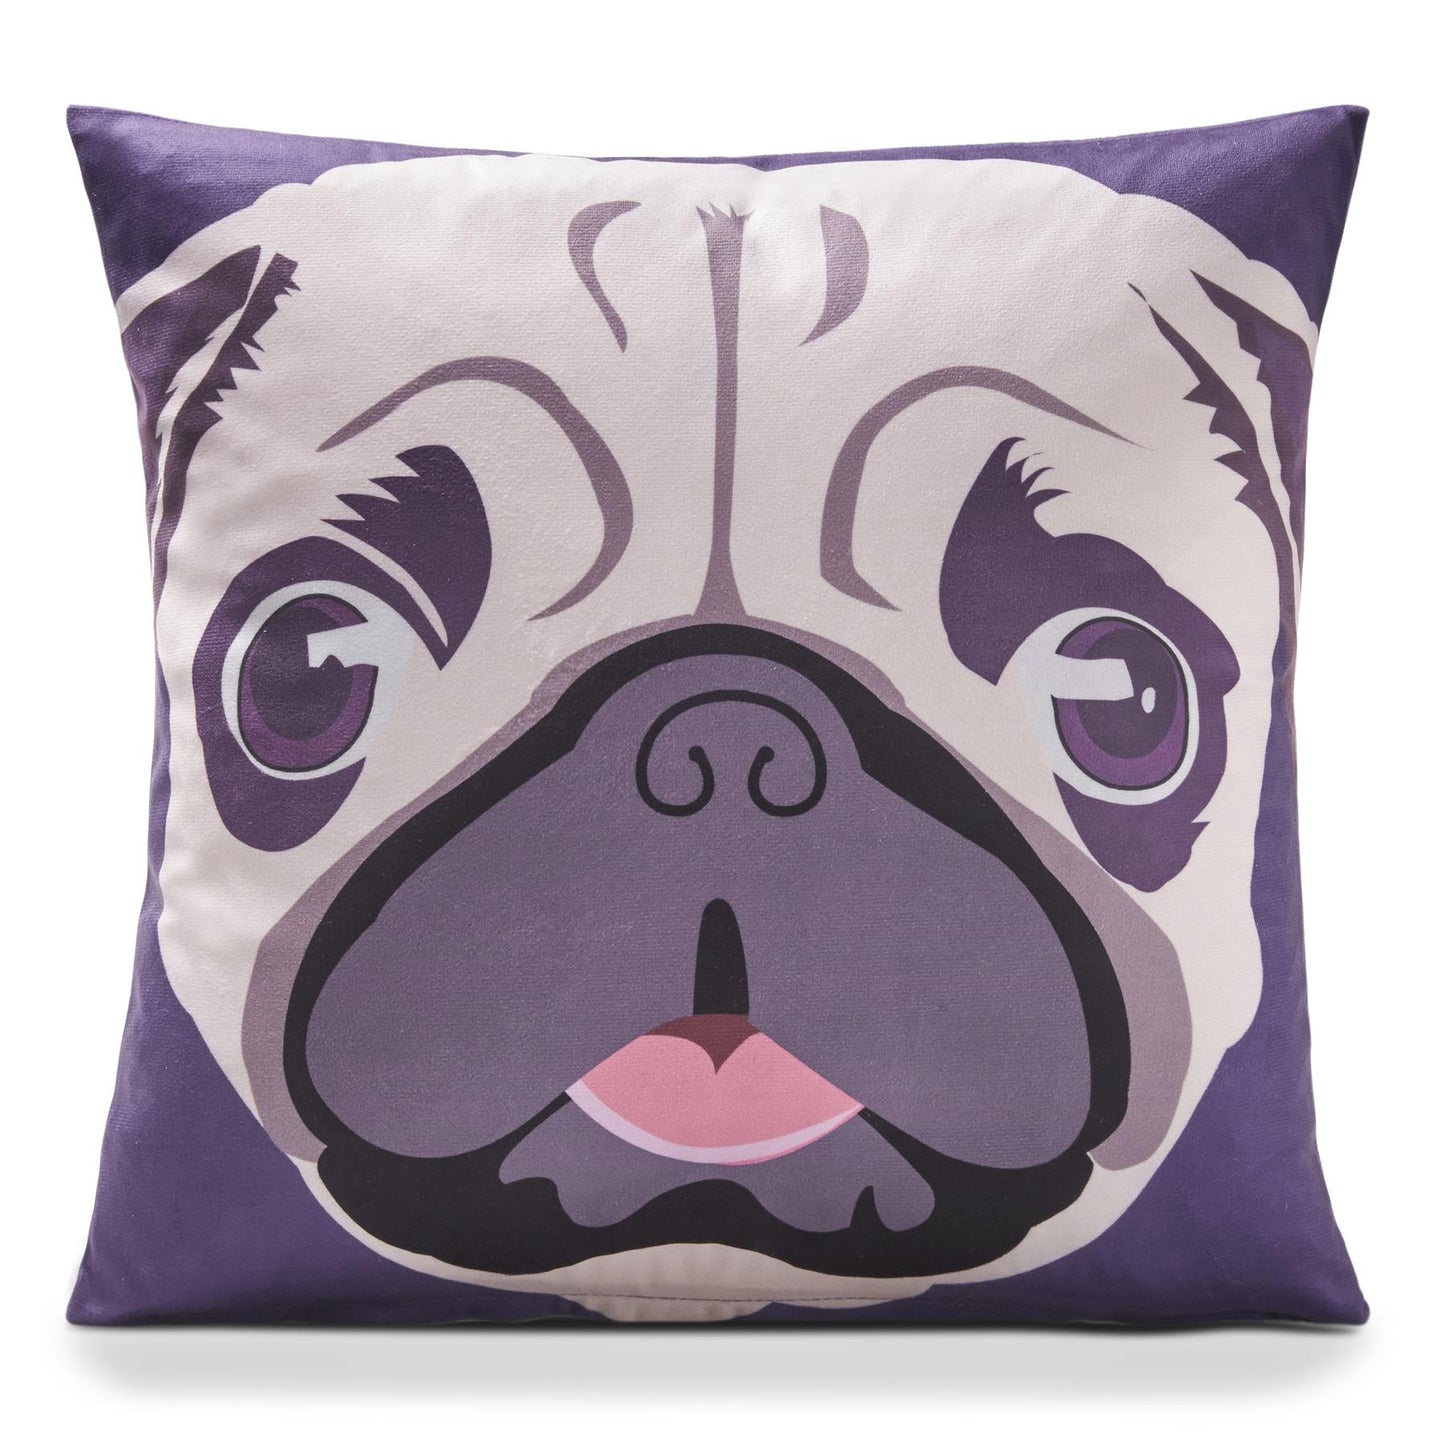 Multi Pug Dog Velvet Cushion Cover